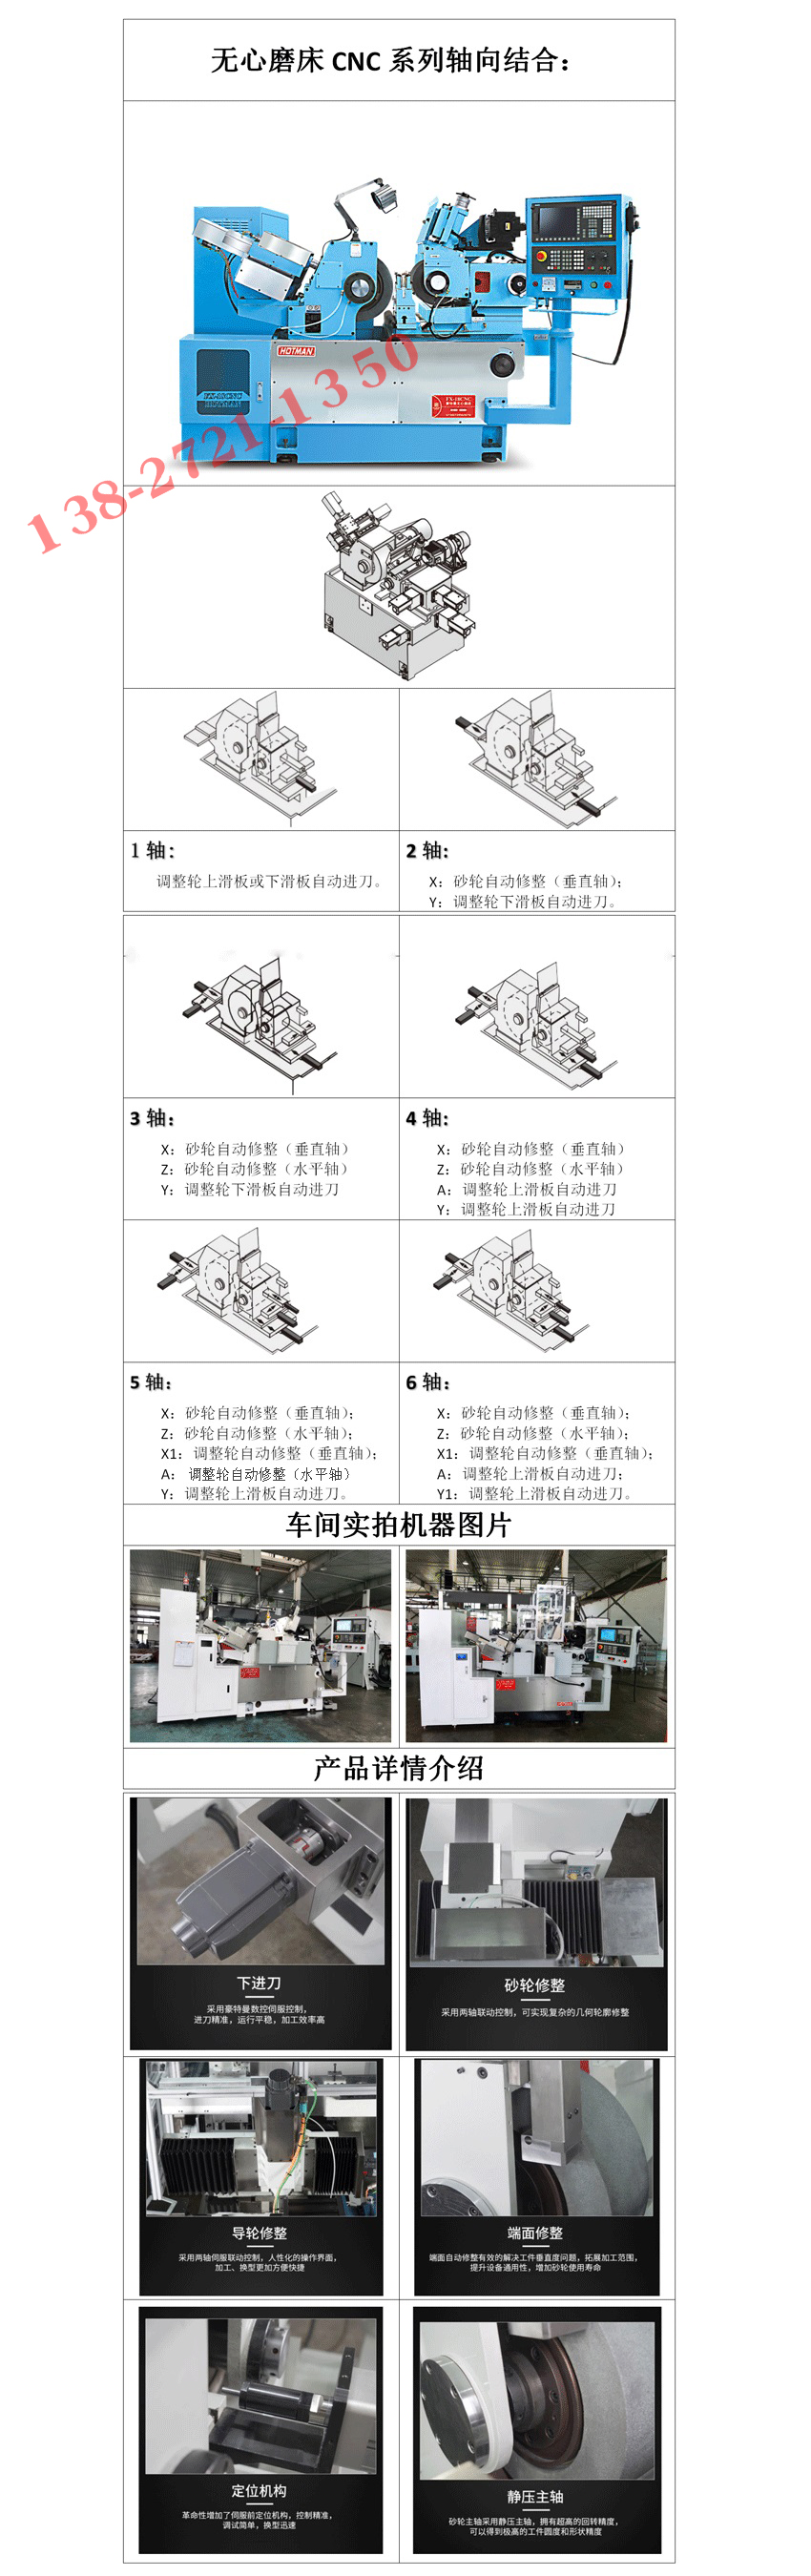 FX-18CNC成型无心磨床产品详情介绍